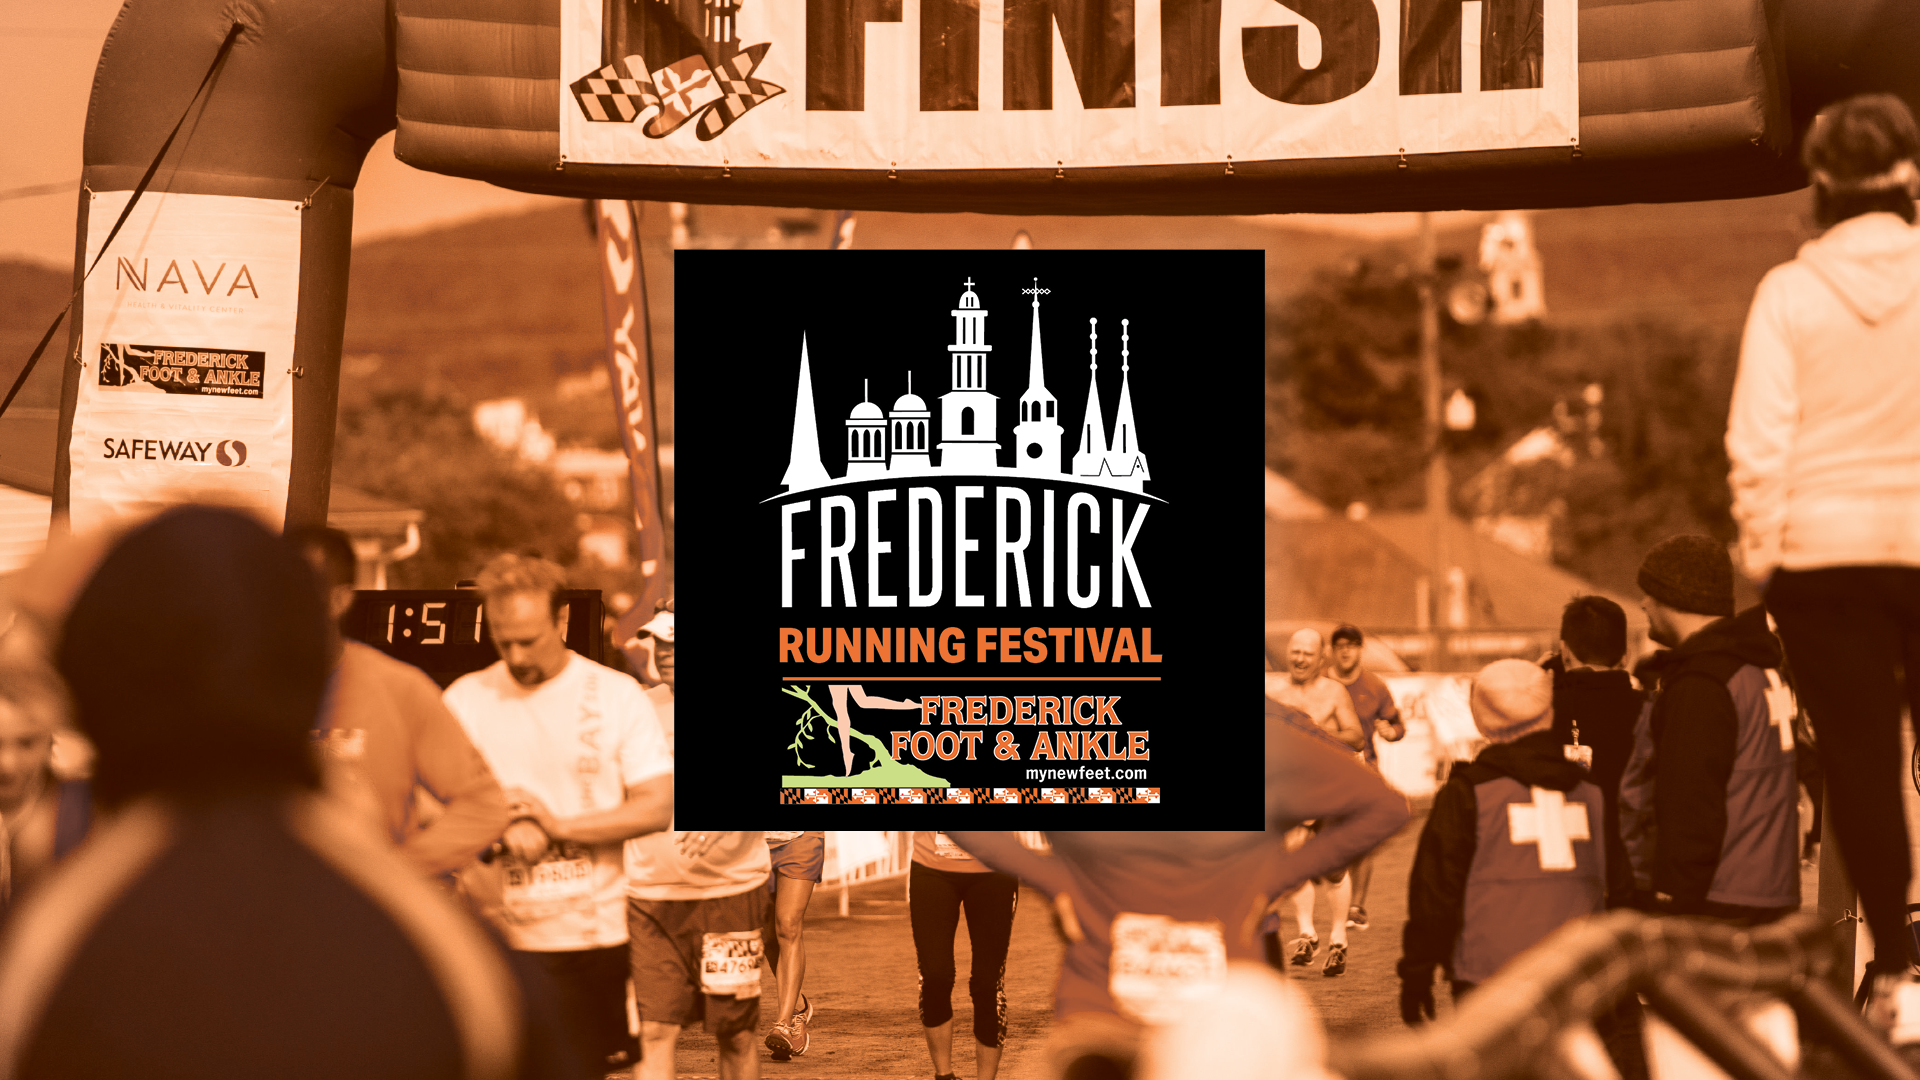 Frederick Running Festival